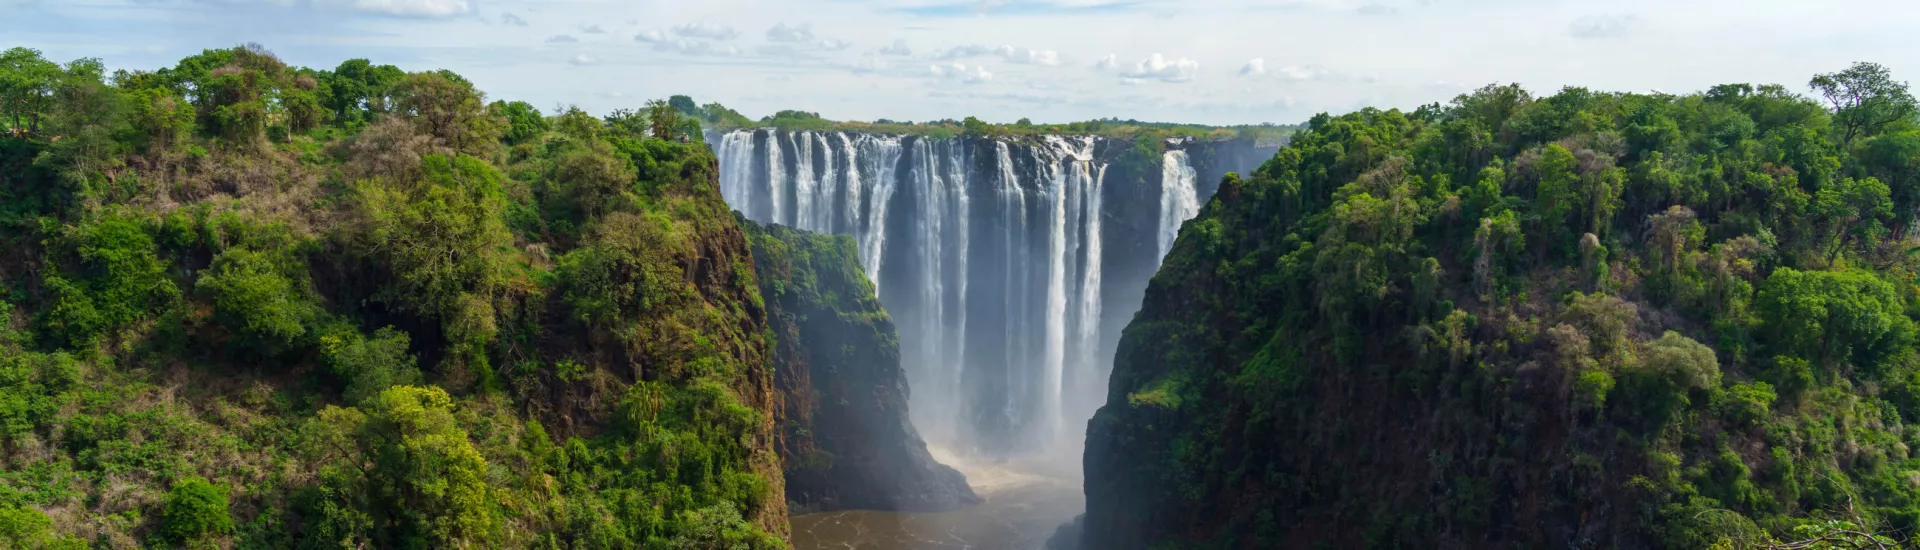 Victoria Falls, Zambezi River, Zimbabwe, Zambia.